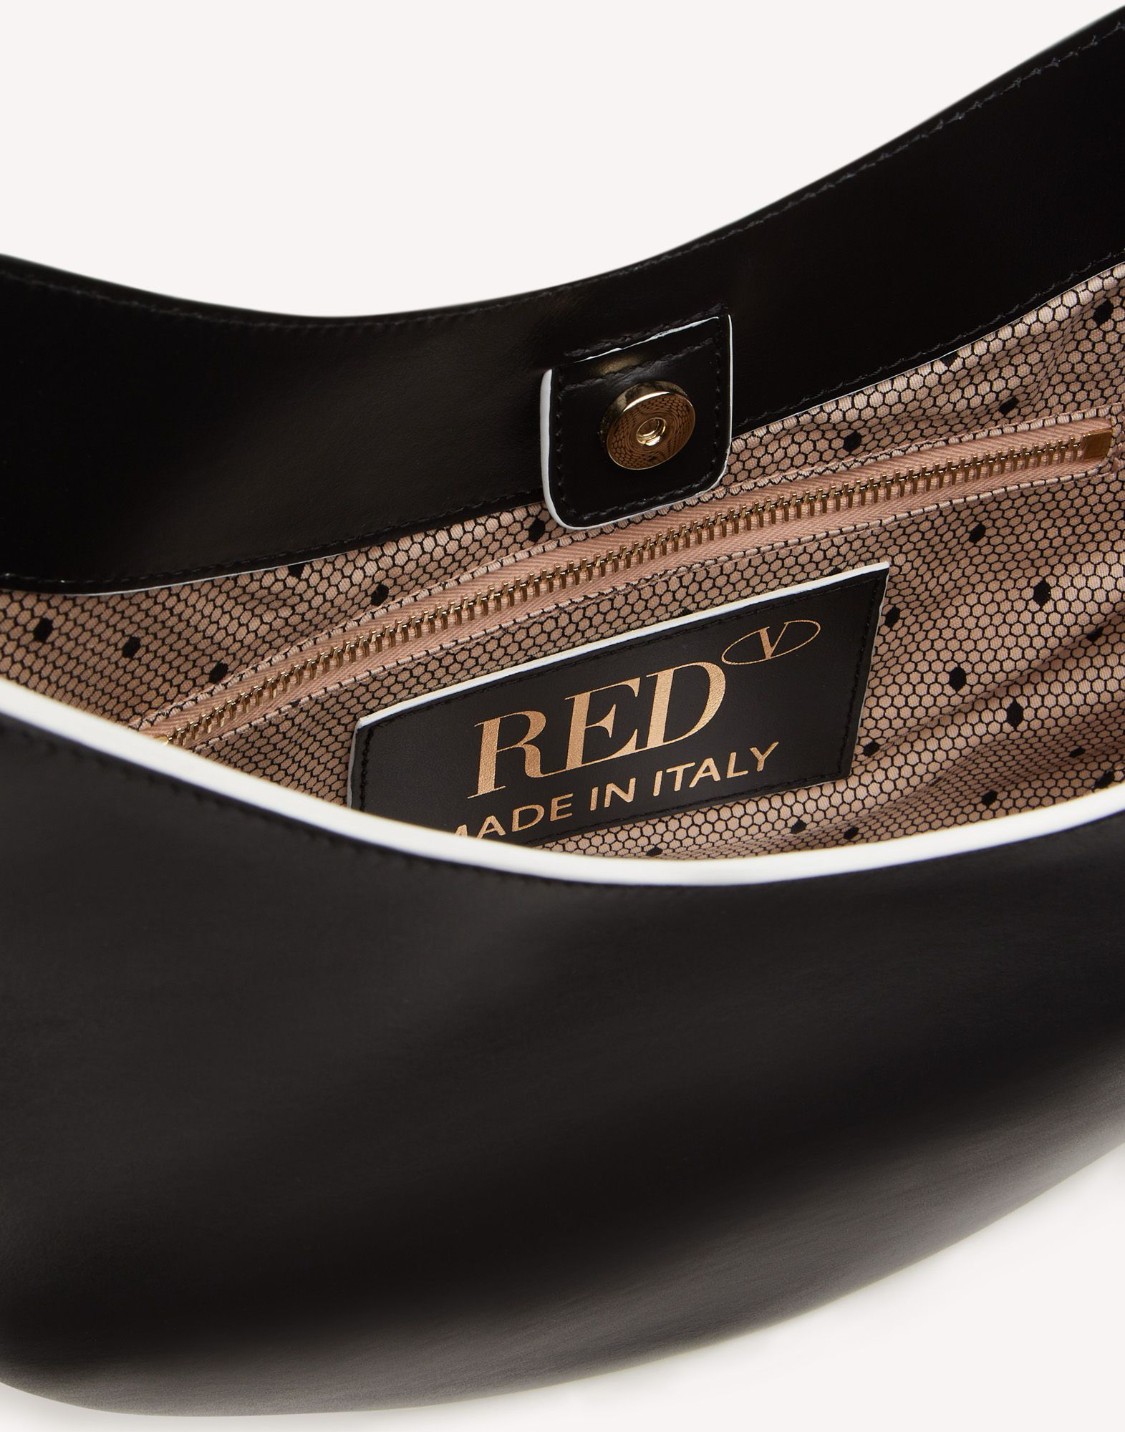 shop RED VALENTINO Saldi Borsa: Red Valentino borsa a spalla bicolore.
dettaglio fiocco oversize realizzato a mano.
Finiture e parti metalliche color oro chiaro.
Dimensioni: L 30 cm x H 27 cm x P 6 cm
Made in Italy. TQ2B0B99NEA-0M number 8903089